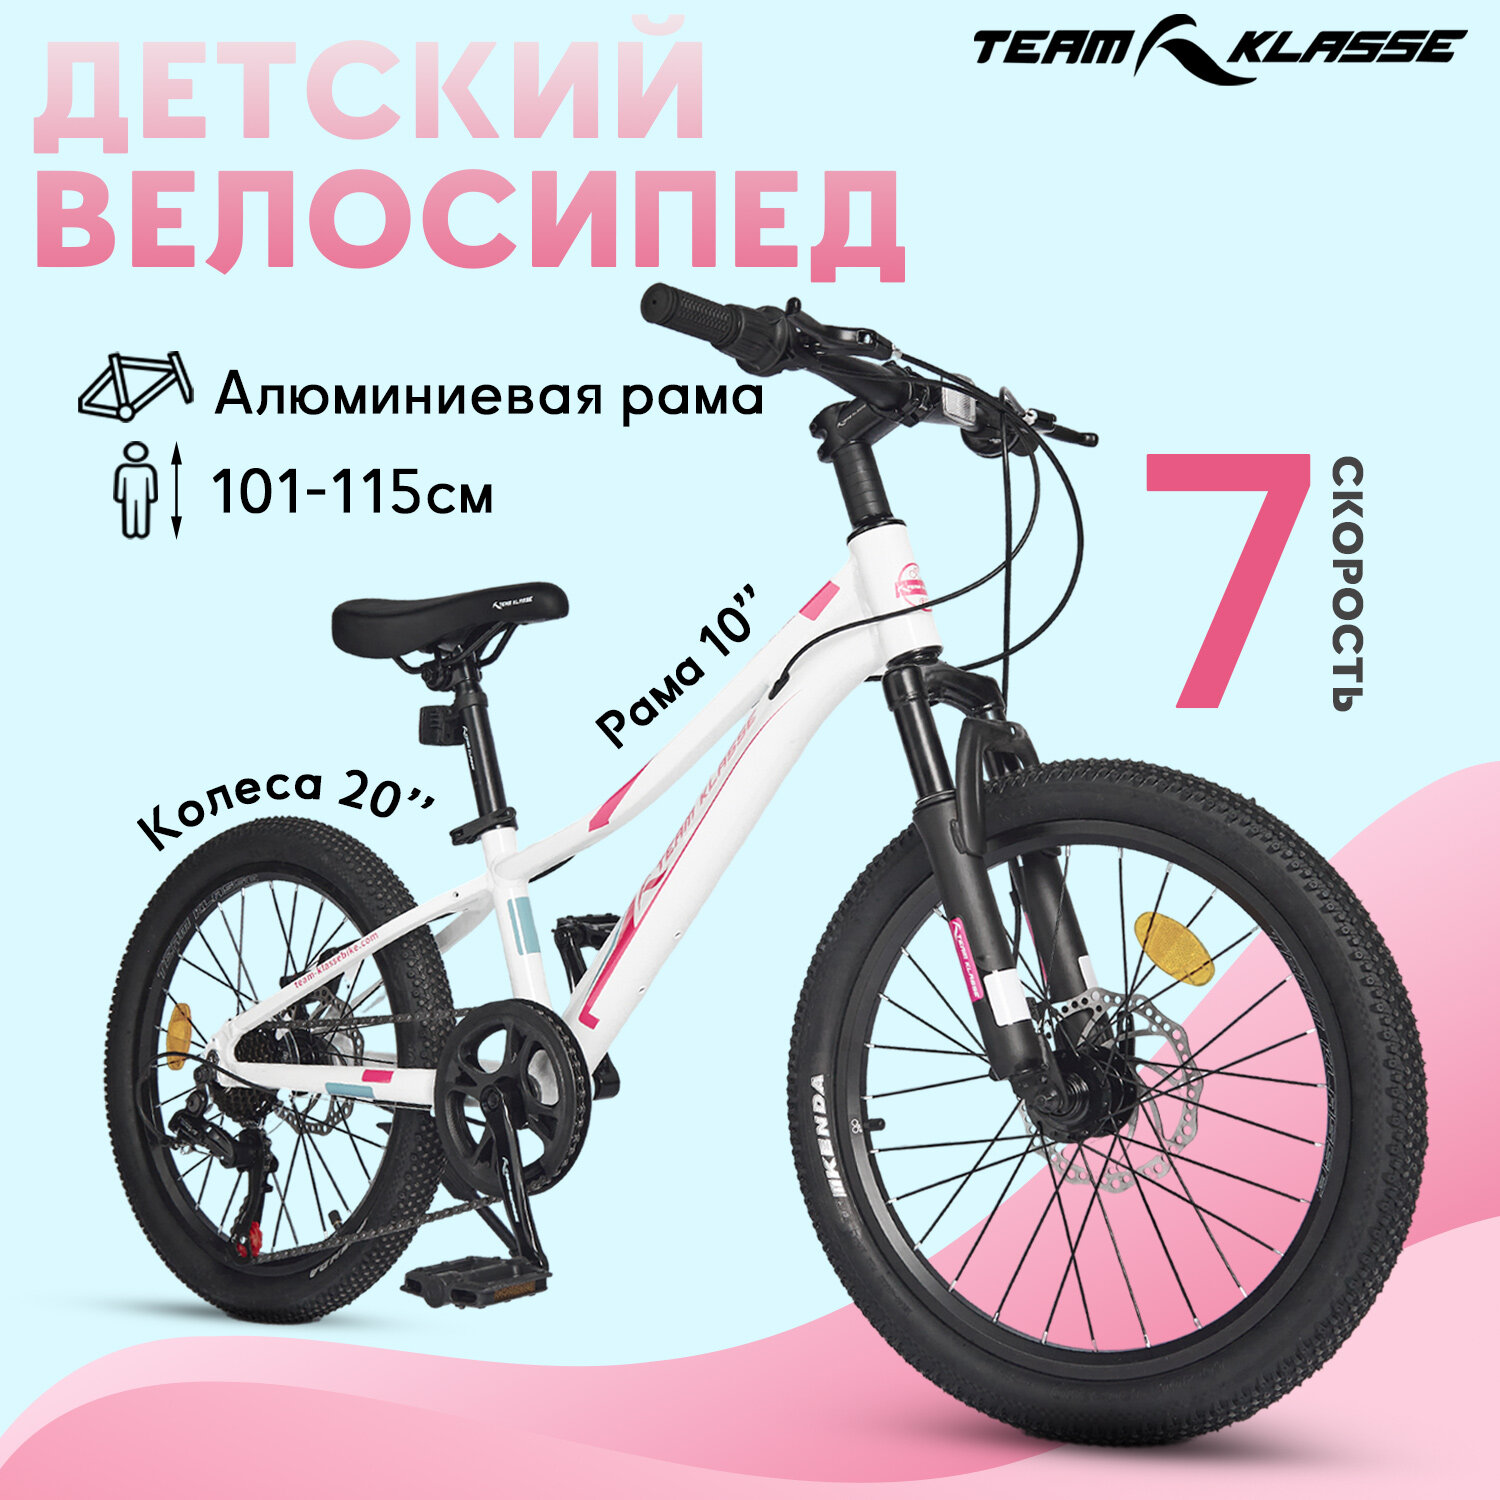 Горный детский велосипед Team Klasse F-4-A, белый. розовый, диаметр колес 20 дюймов